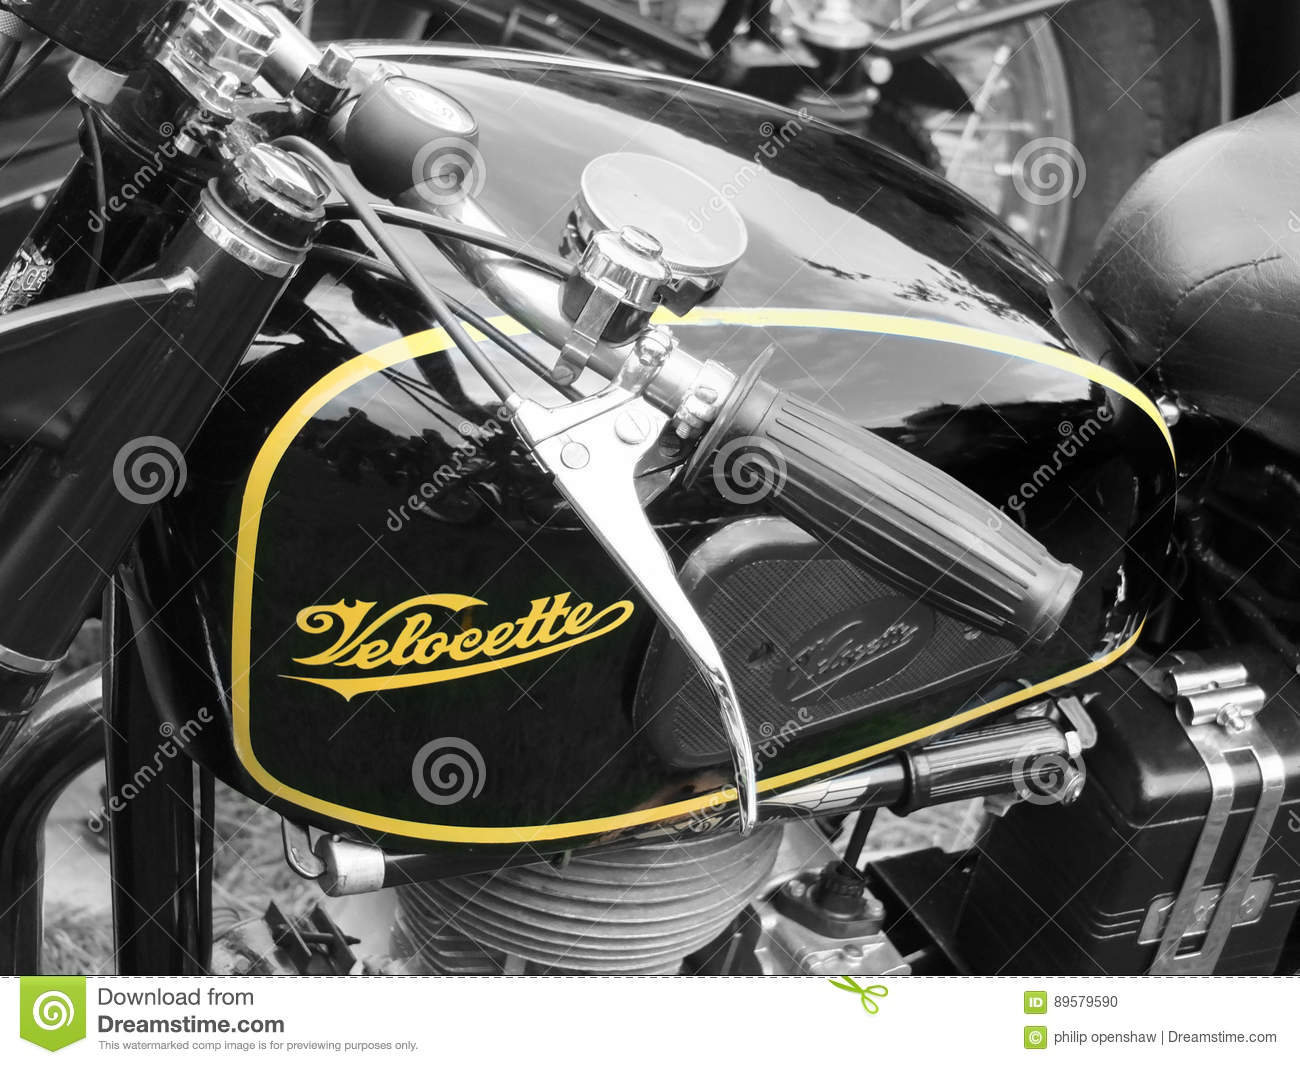 vintage-motorcycle-close-up-detail-old-hebden-bridge-weekend-89579590.jpg